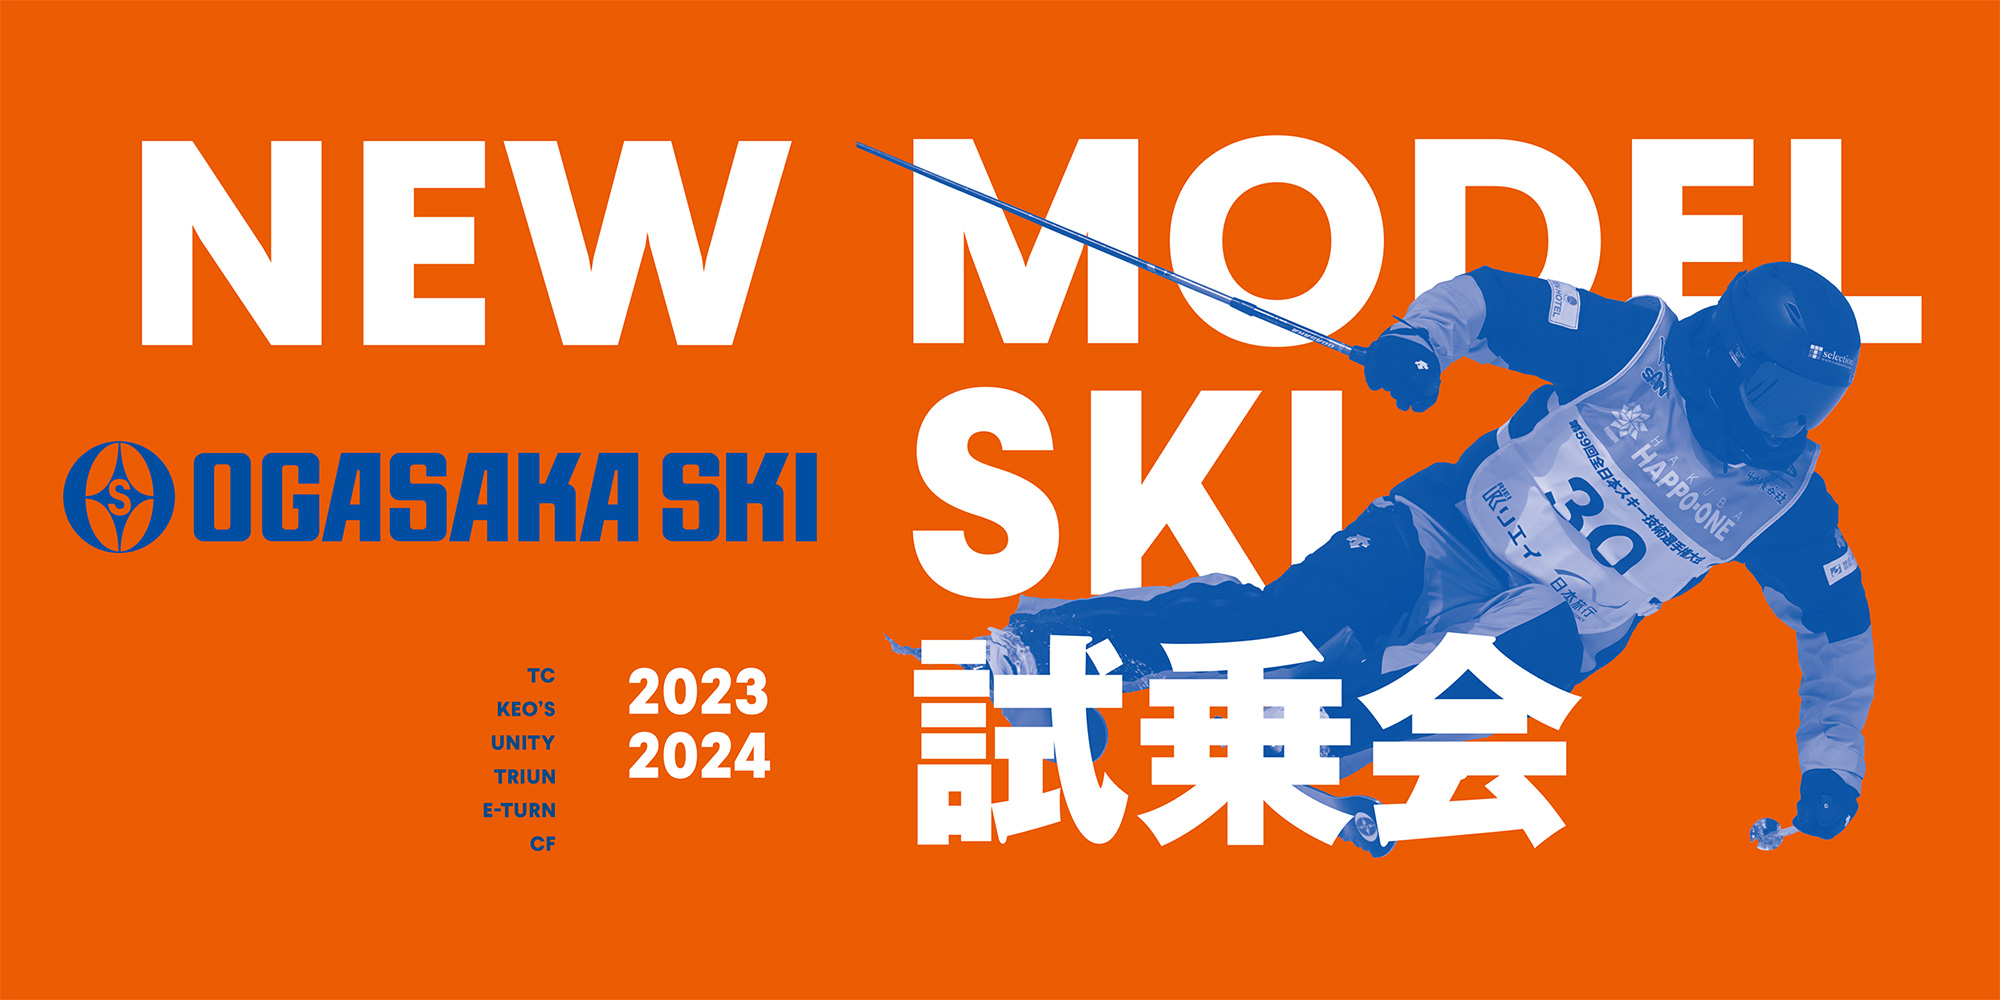 23 OGASAKA NEW MODEL SKI 試乗会 in ホワイトワールド尾瀬岩鞍 